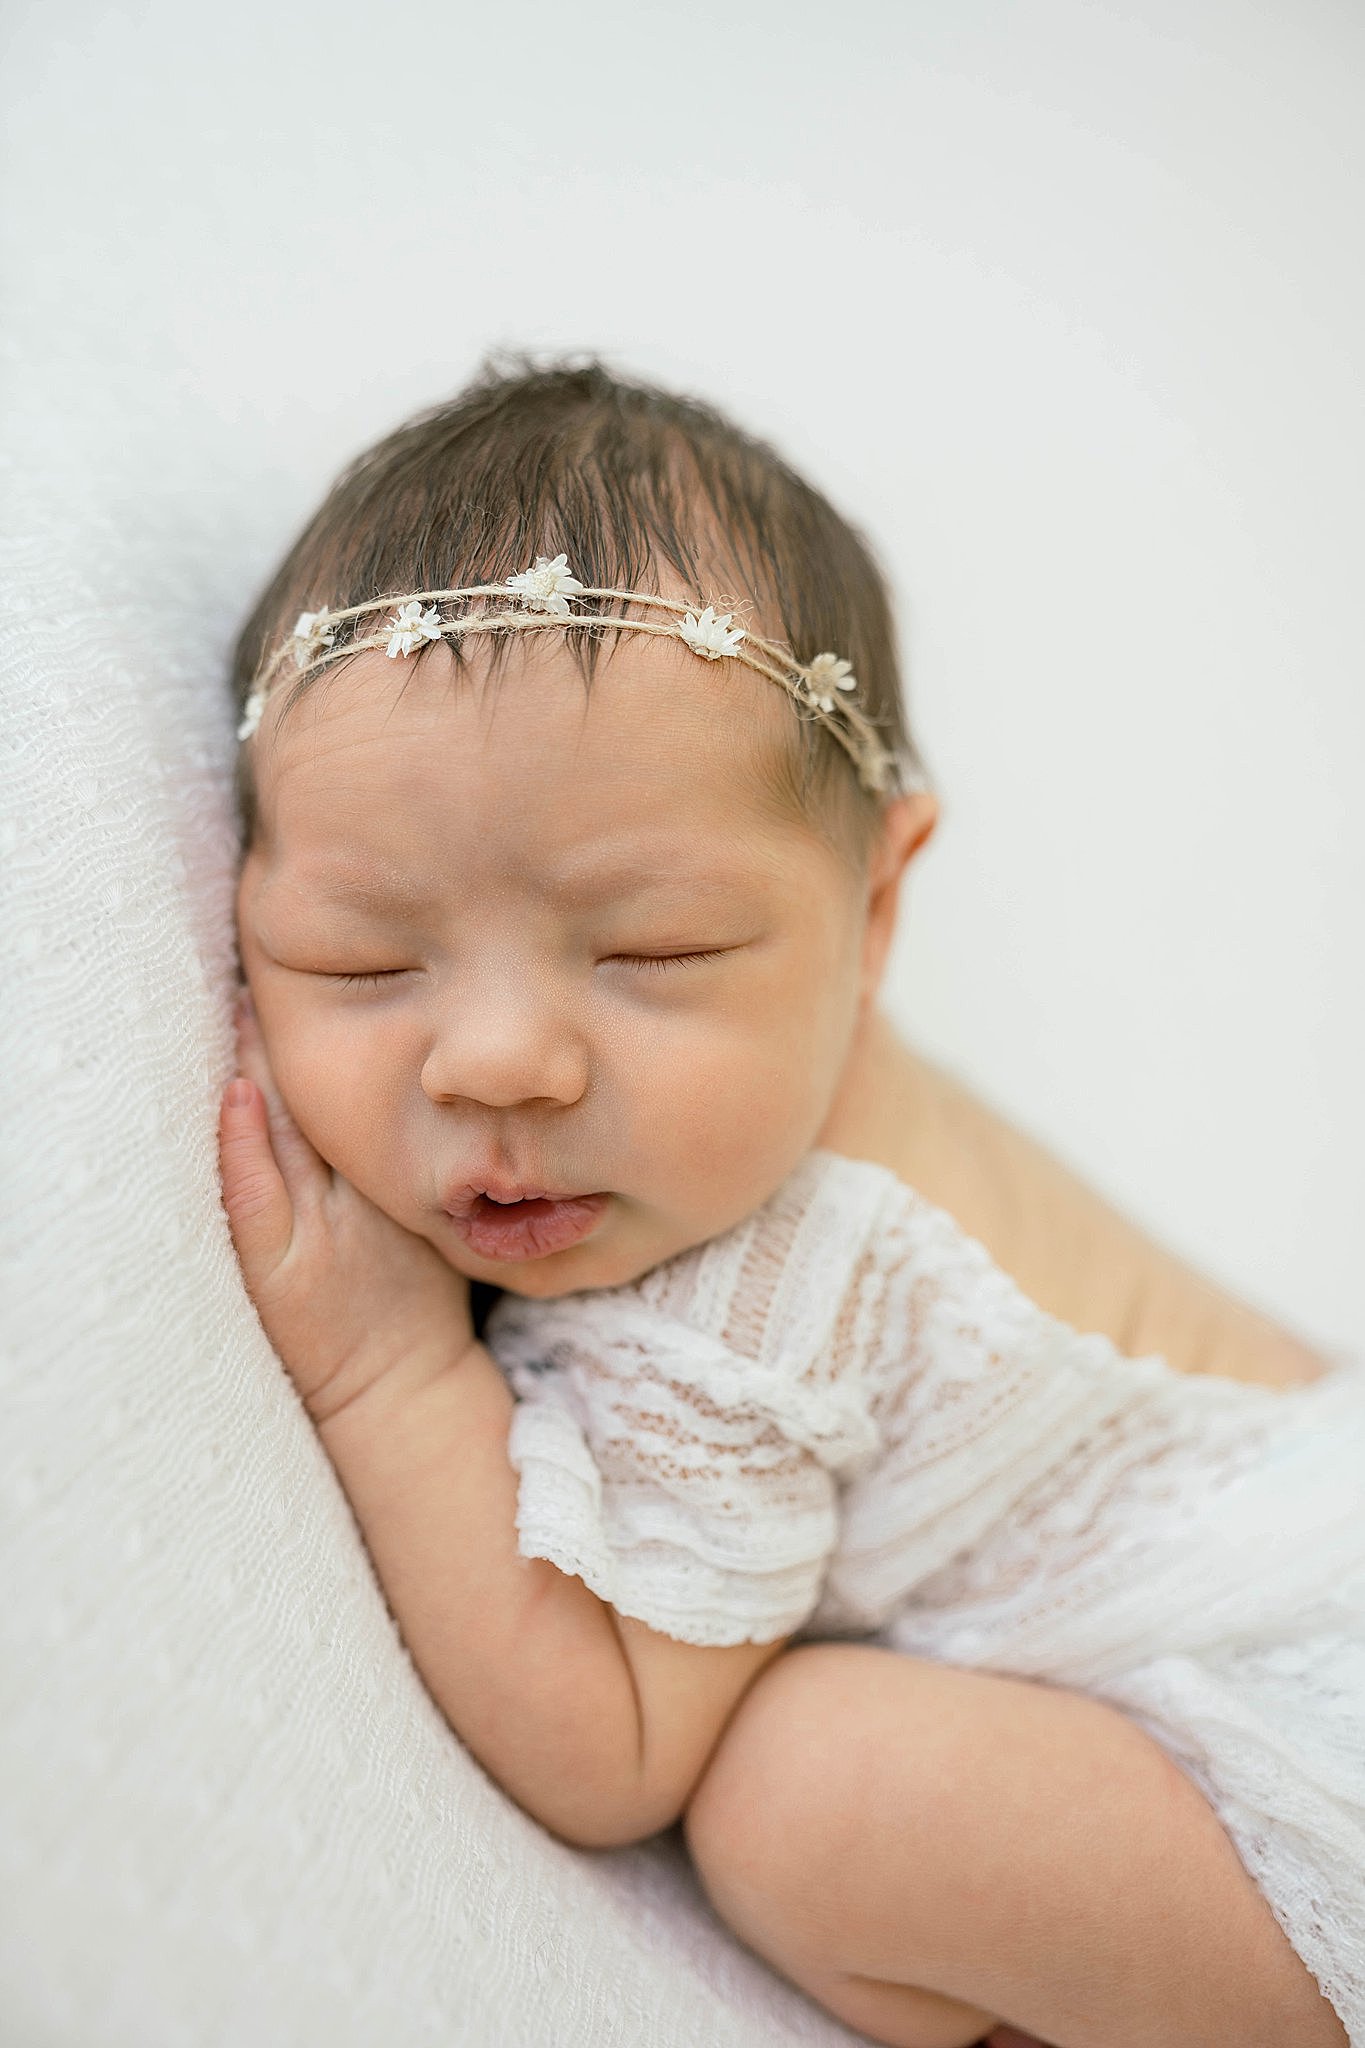 A newborn baby sleeps on her hands in a white lace onesie bella baby